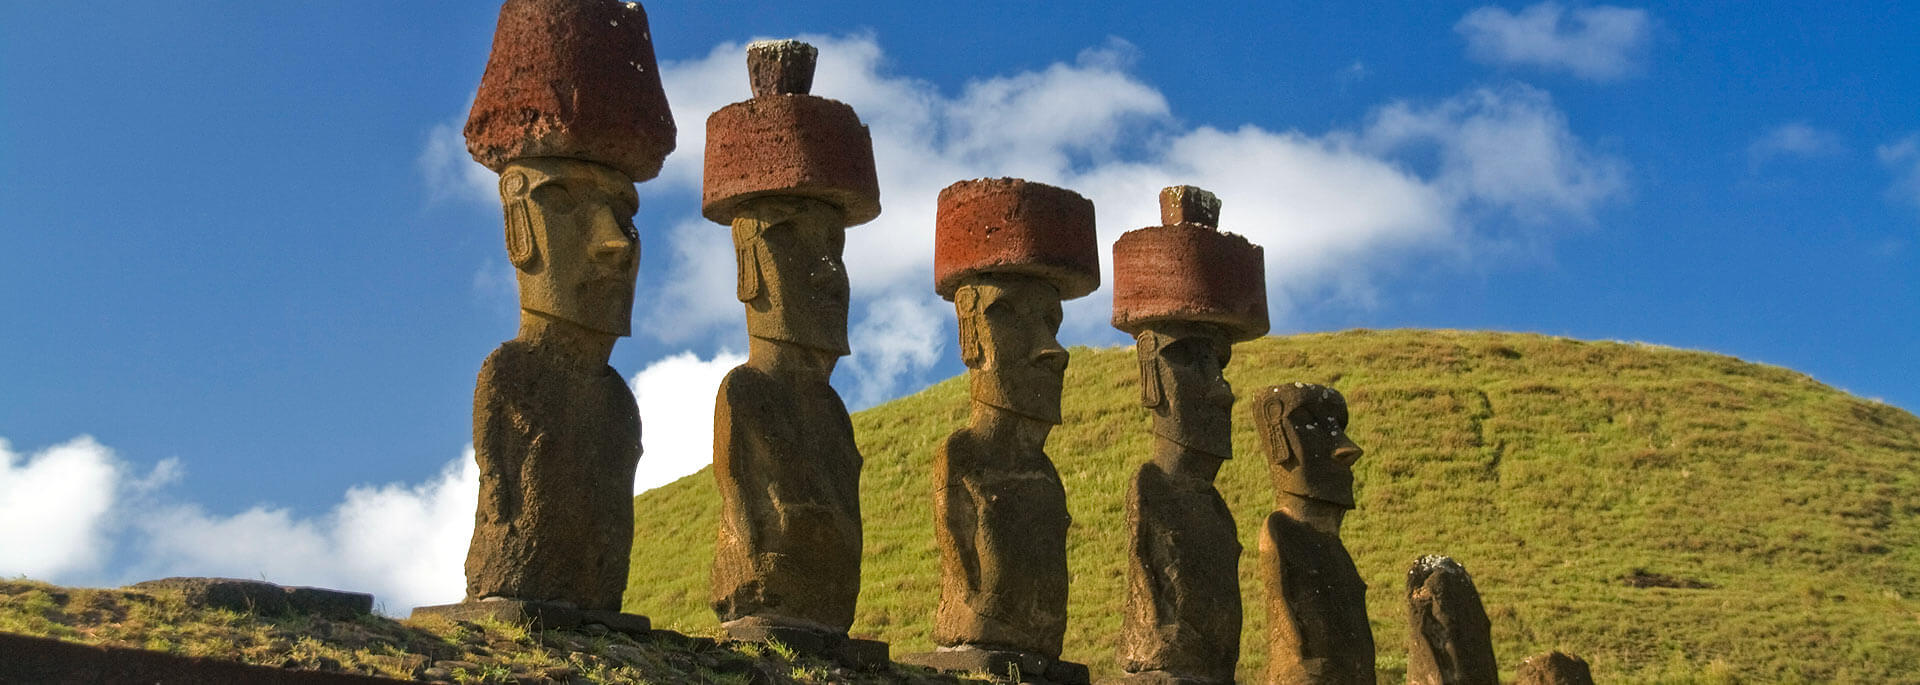 Warum ich immer noch nicht alle Moai der Osterinsel gesehen habe